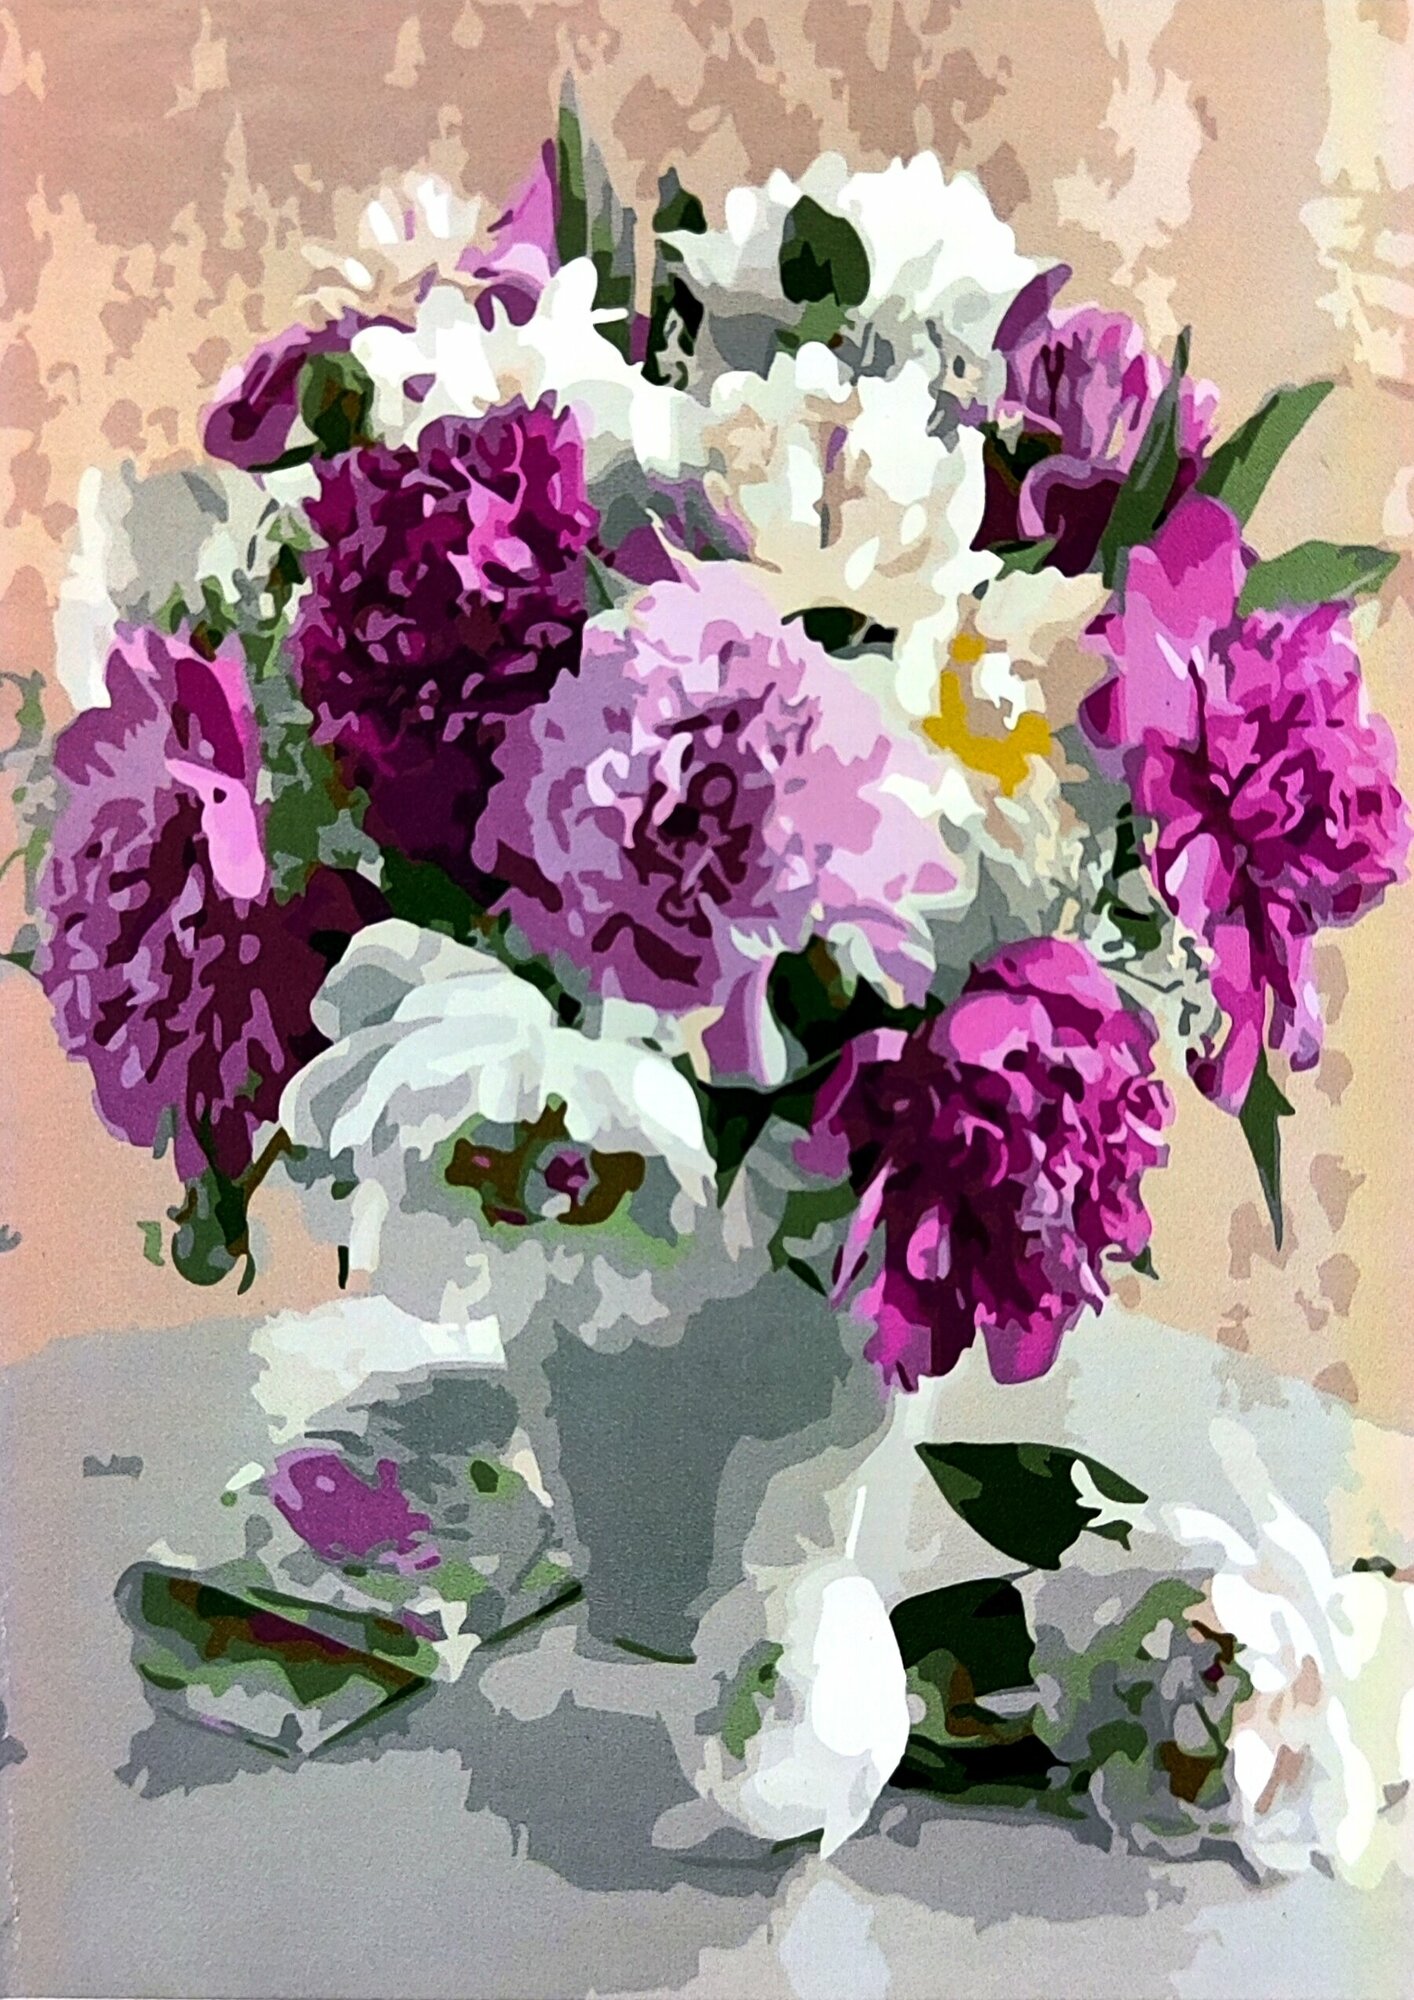 Картина по номерам 40х50 Paintboy натюрморт, букет пионов в вазе, розы, полевые цветы, сирень, герберы, переженое